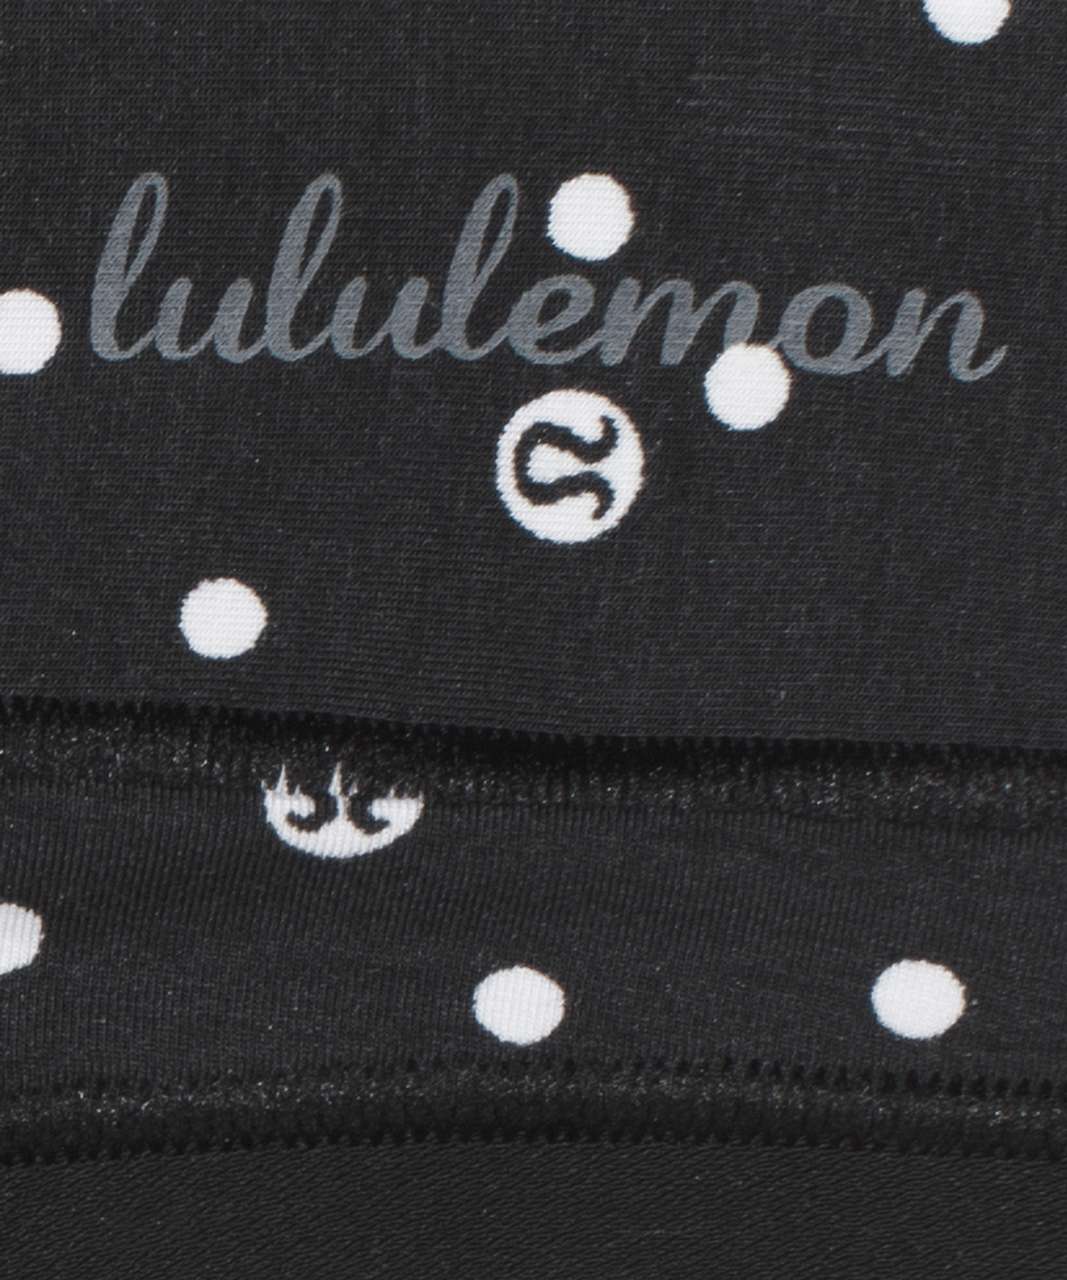 Lululemon Soft Breathable Thong *3 Pack - Inspirit Polka White Black / Brier Rose / Chrome